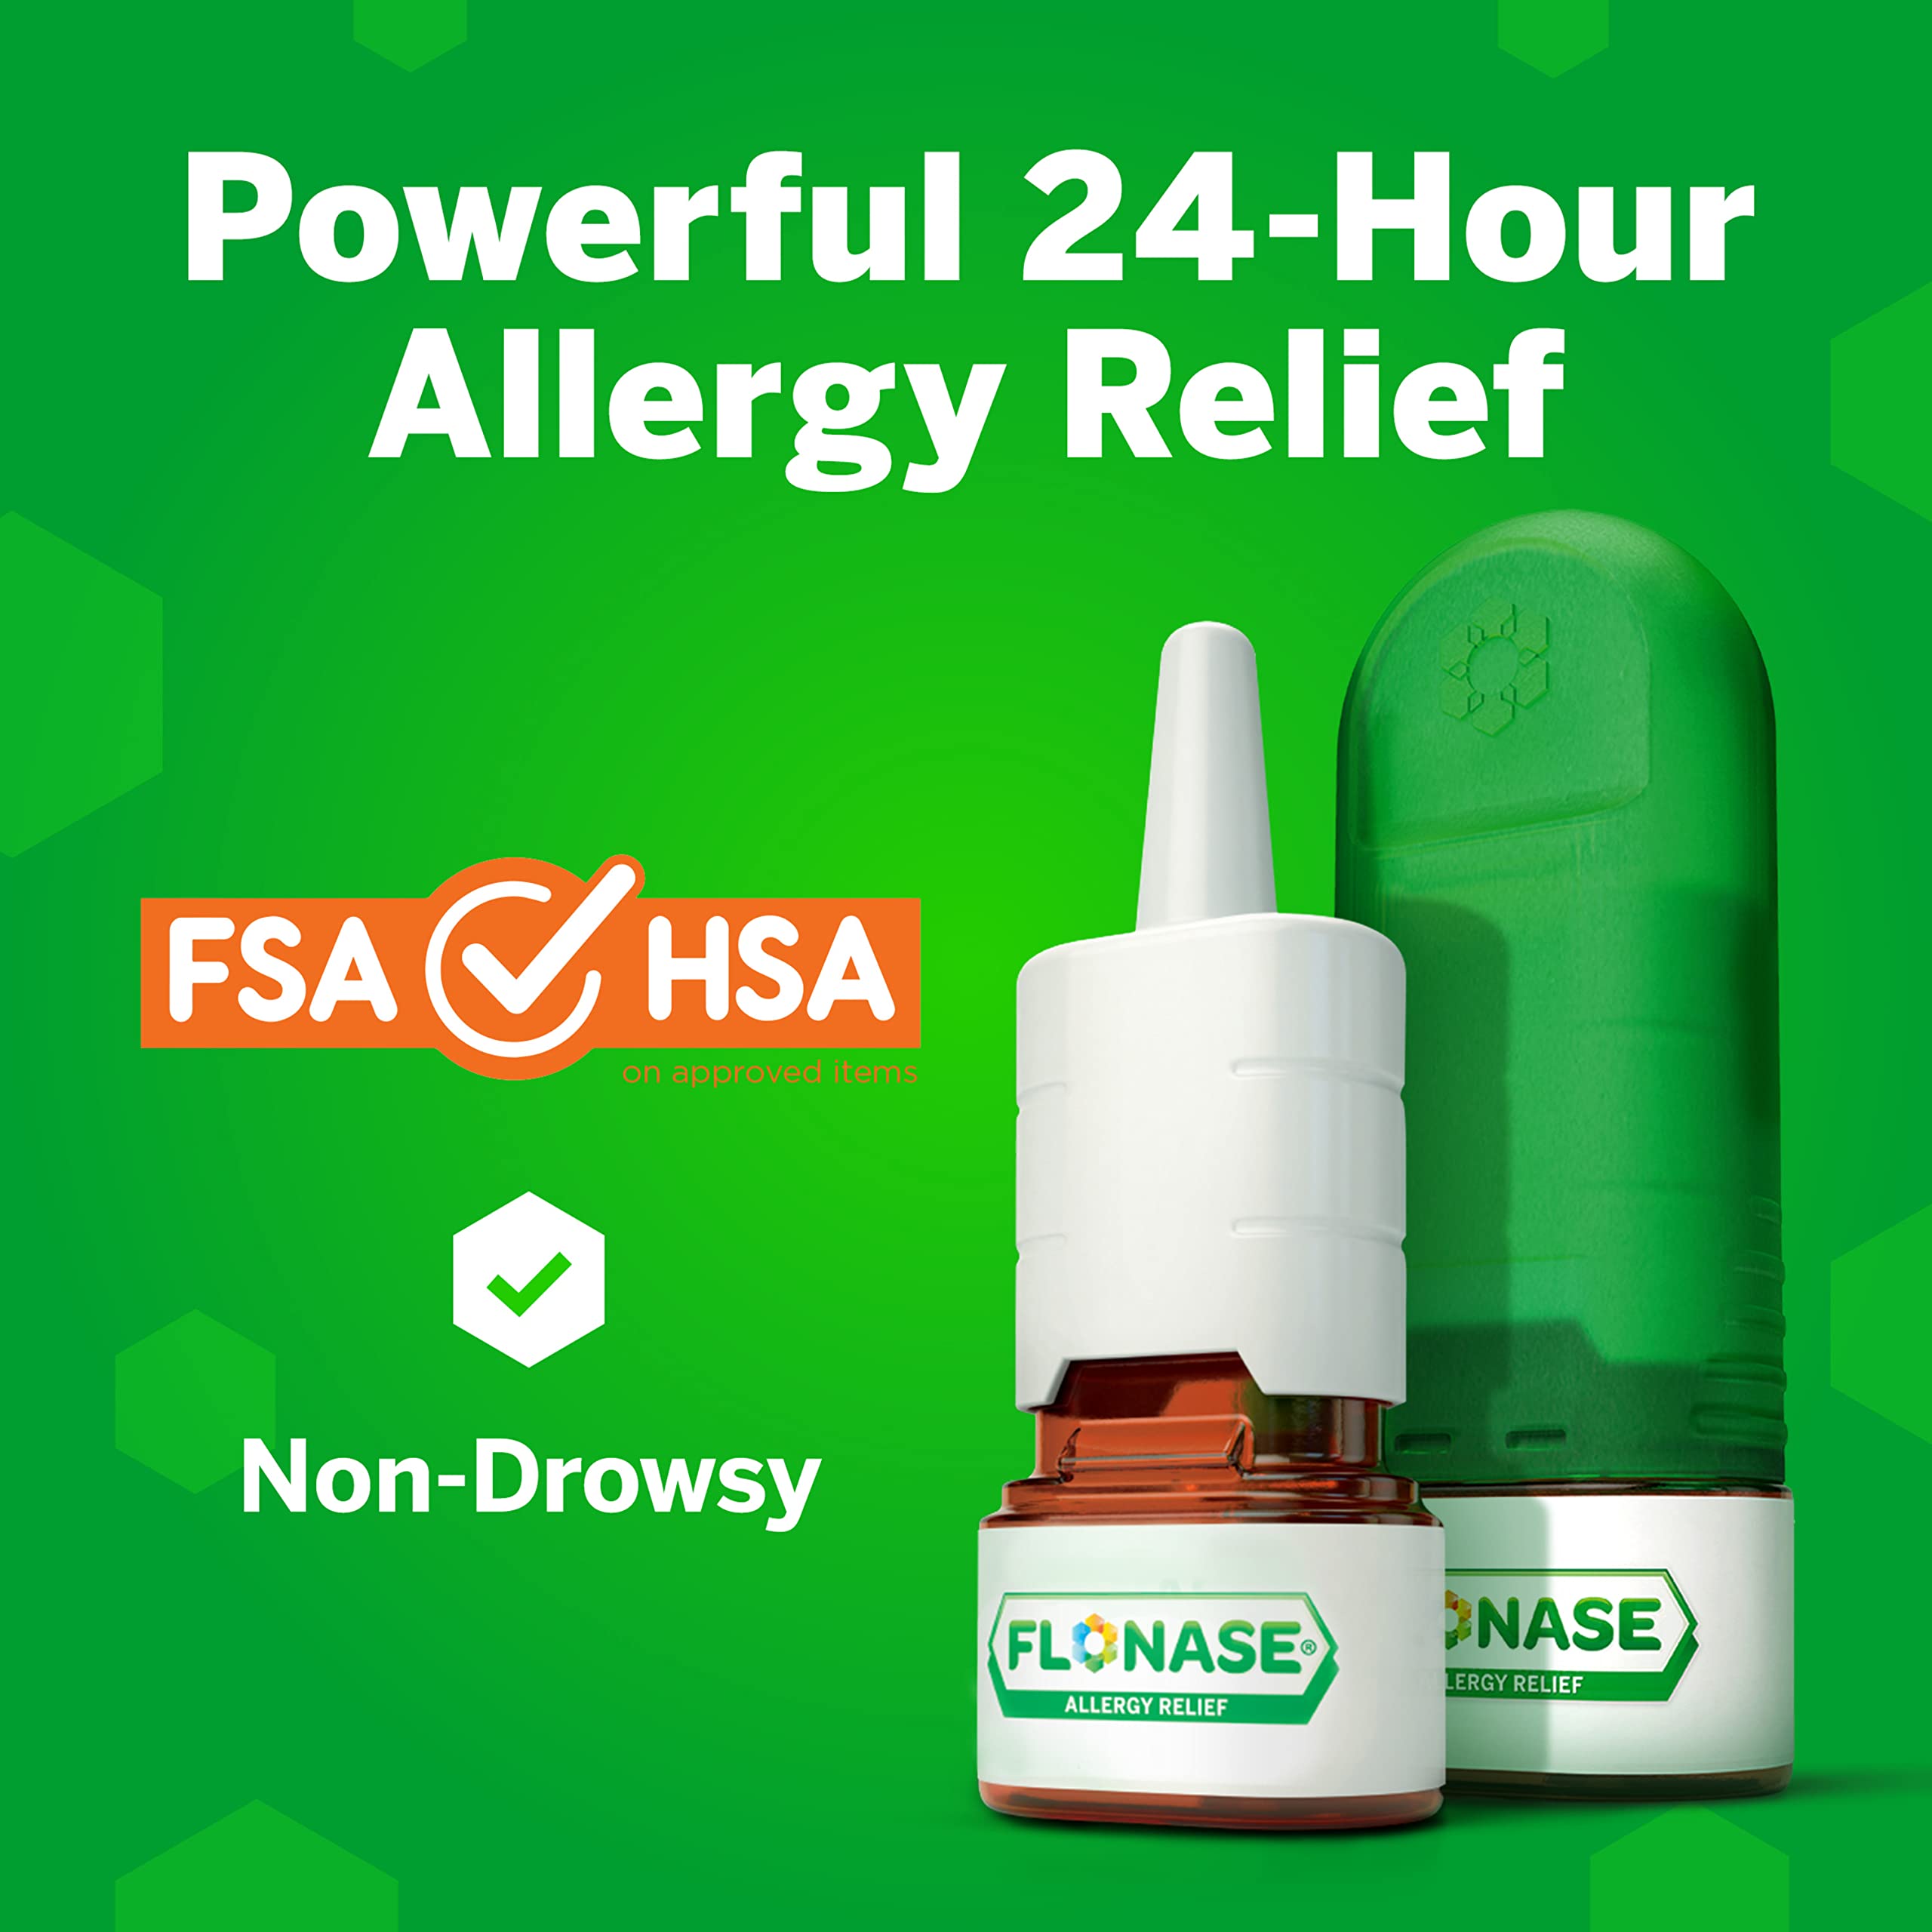 Flonase Allergy Relief Nasal Spray, 24 Hour Non Drowsy Allergy Medicine, Metered Nasal Spray - 144 Sprays